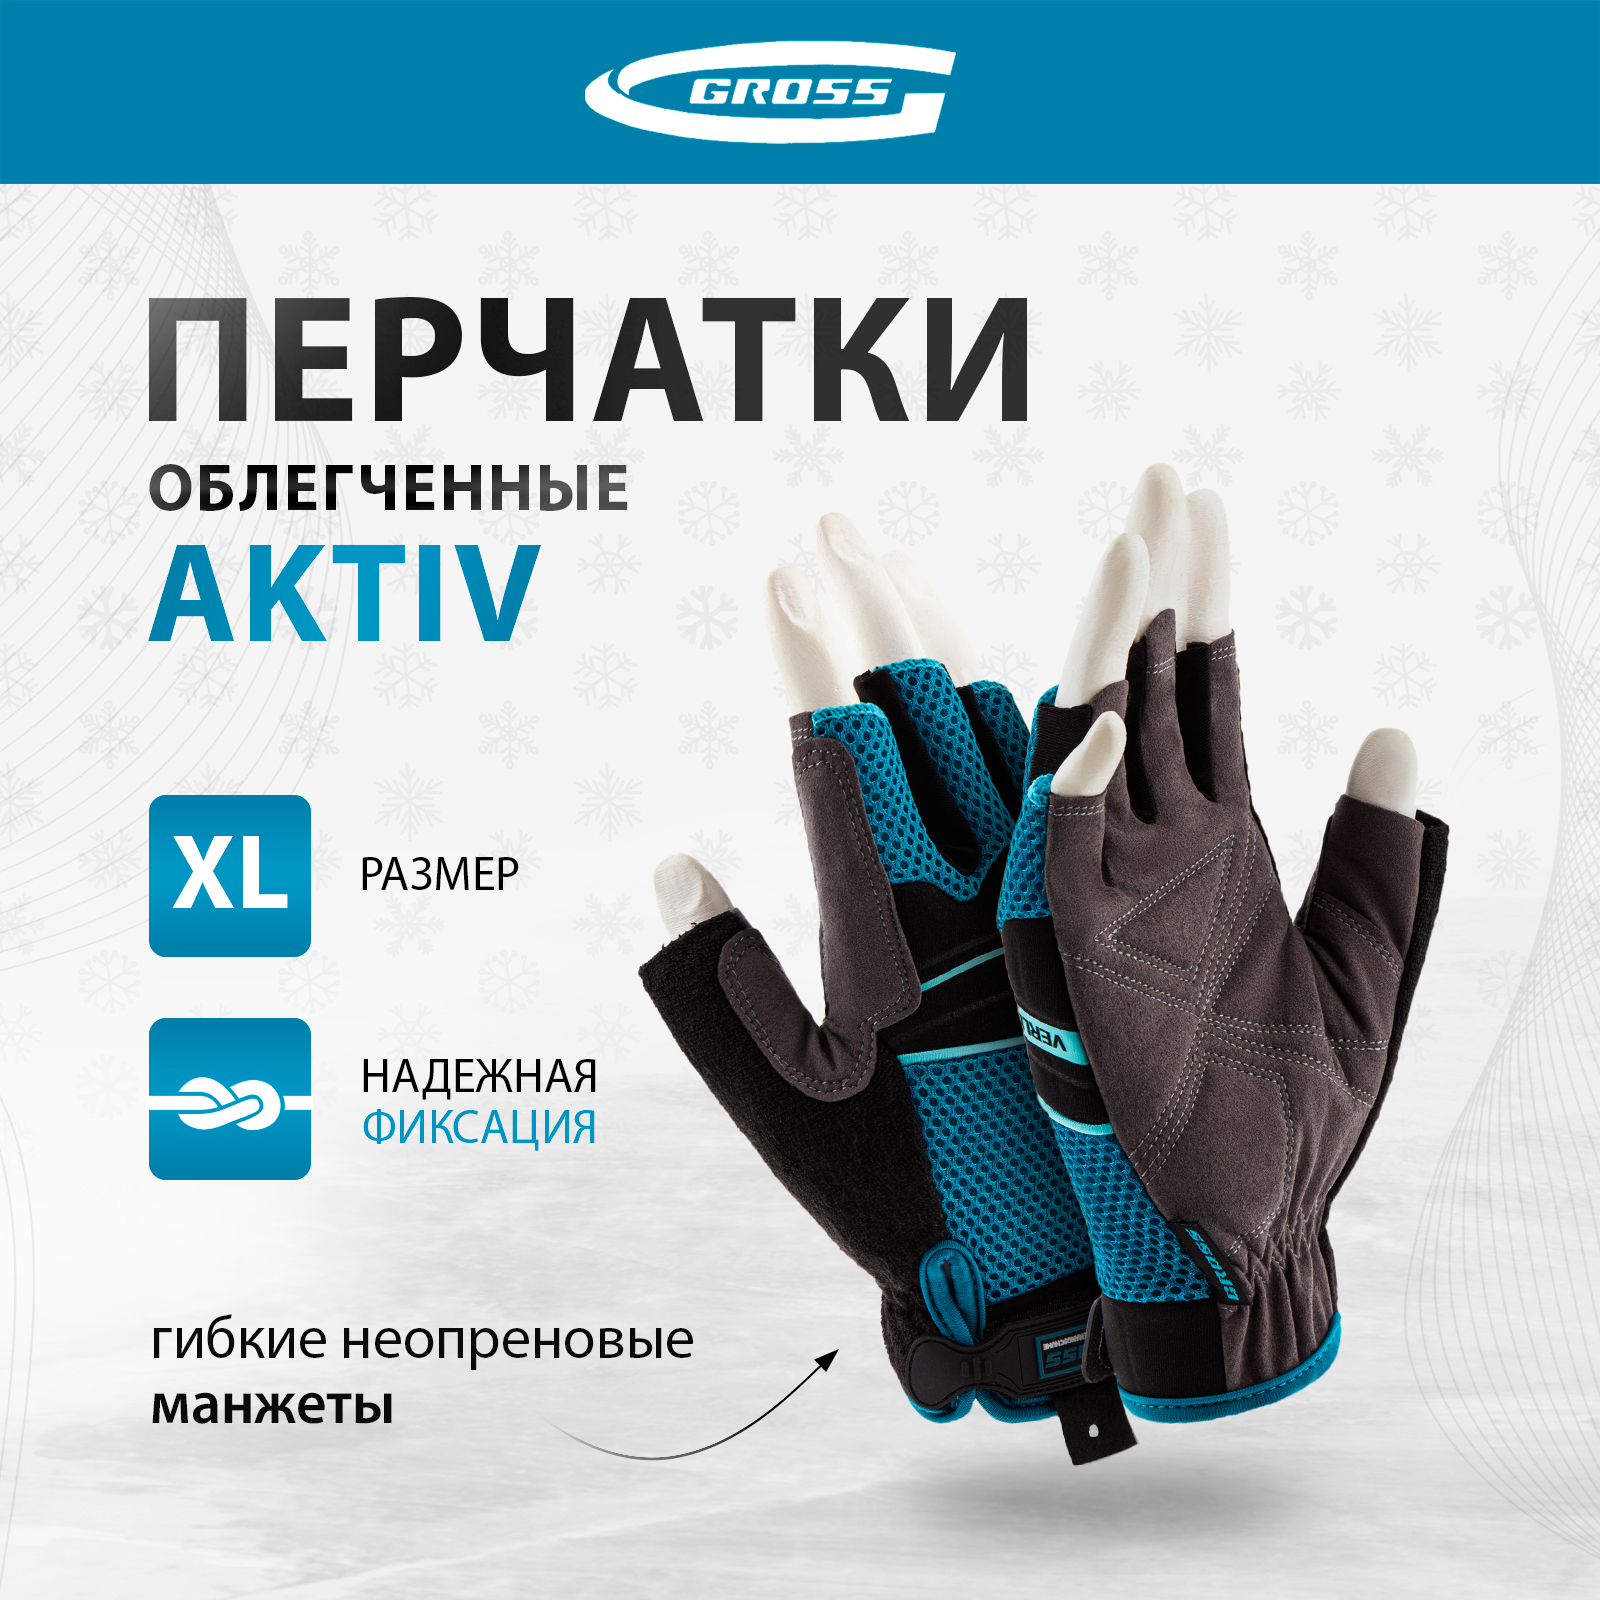 Перчатки комбинированные облегченные GROSS AKTIV открытые пальцыразмер XL (10) 90310 комбинированные облегченные перчатки gross